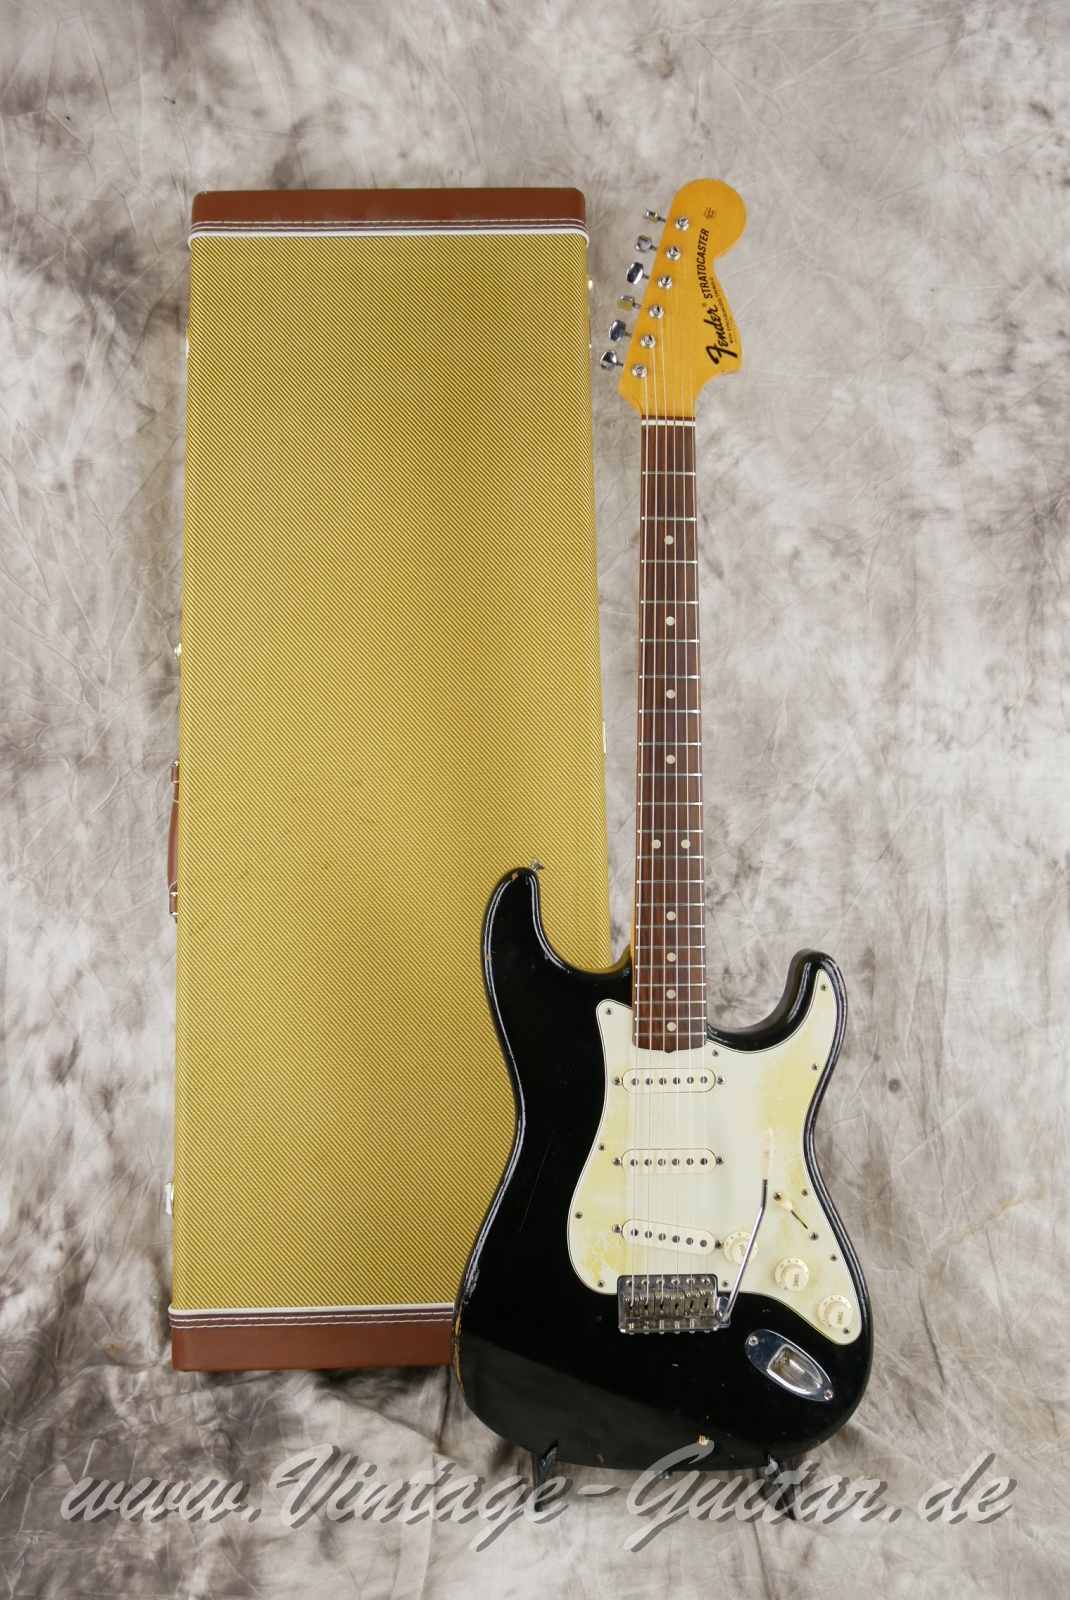 Fender-Stratocaster-1964-body-with-1969-neck-black-039.jpg